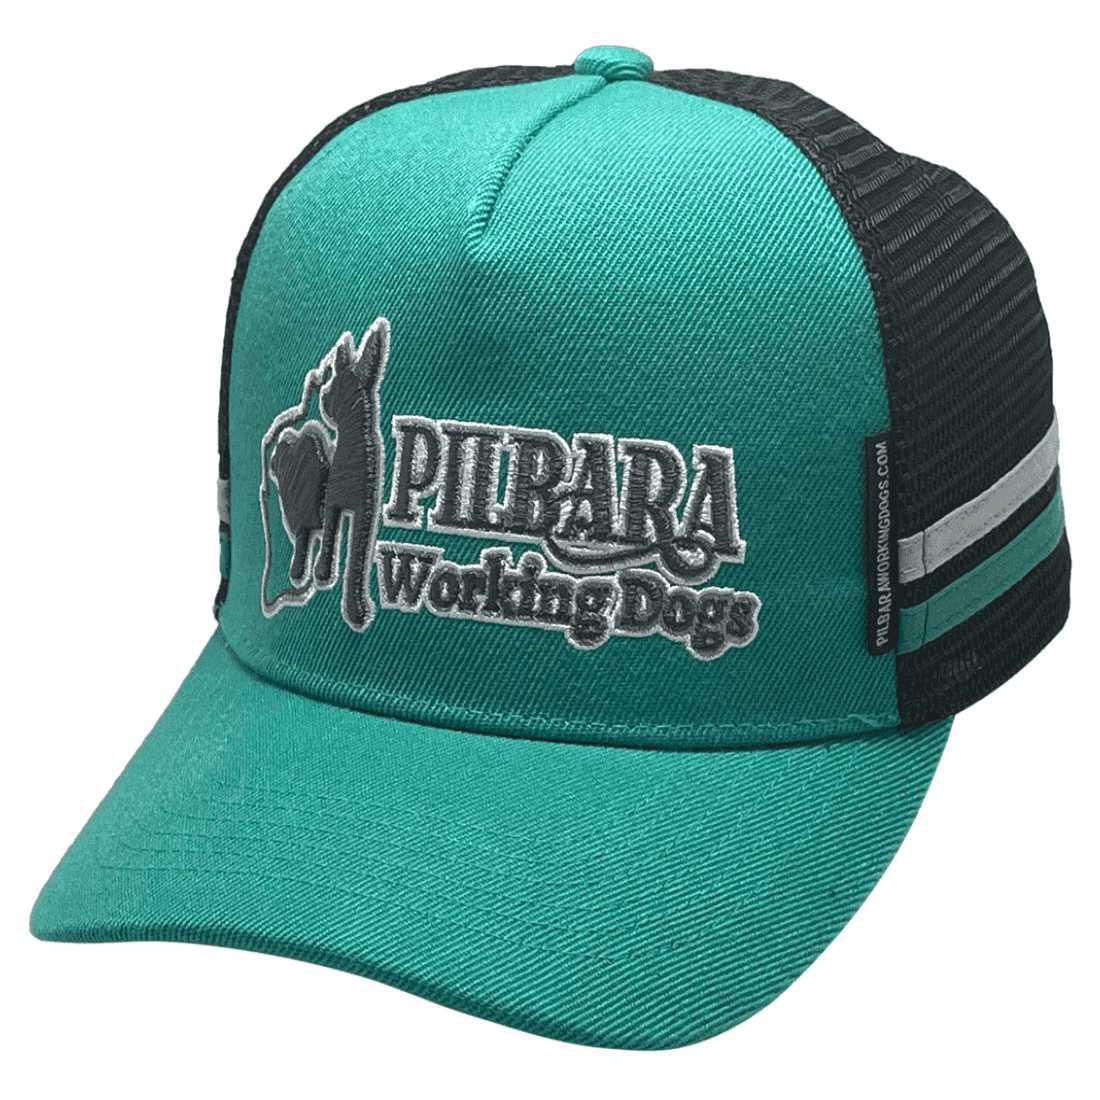 Pilbara Working Dogs (Teal) LP Midrange Aussie Trucker Hat